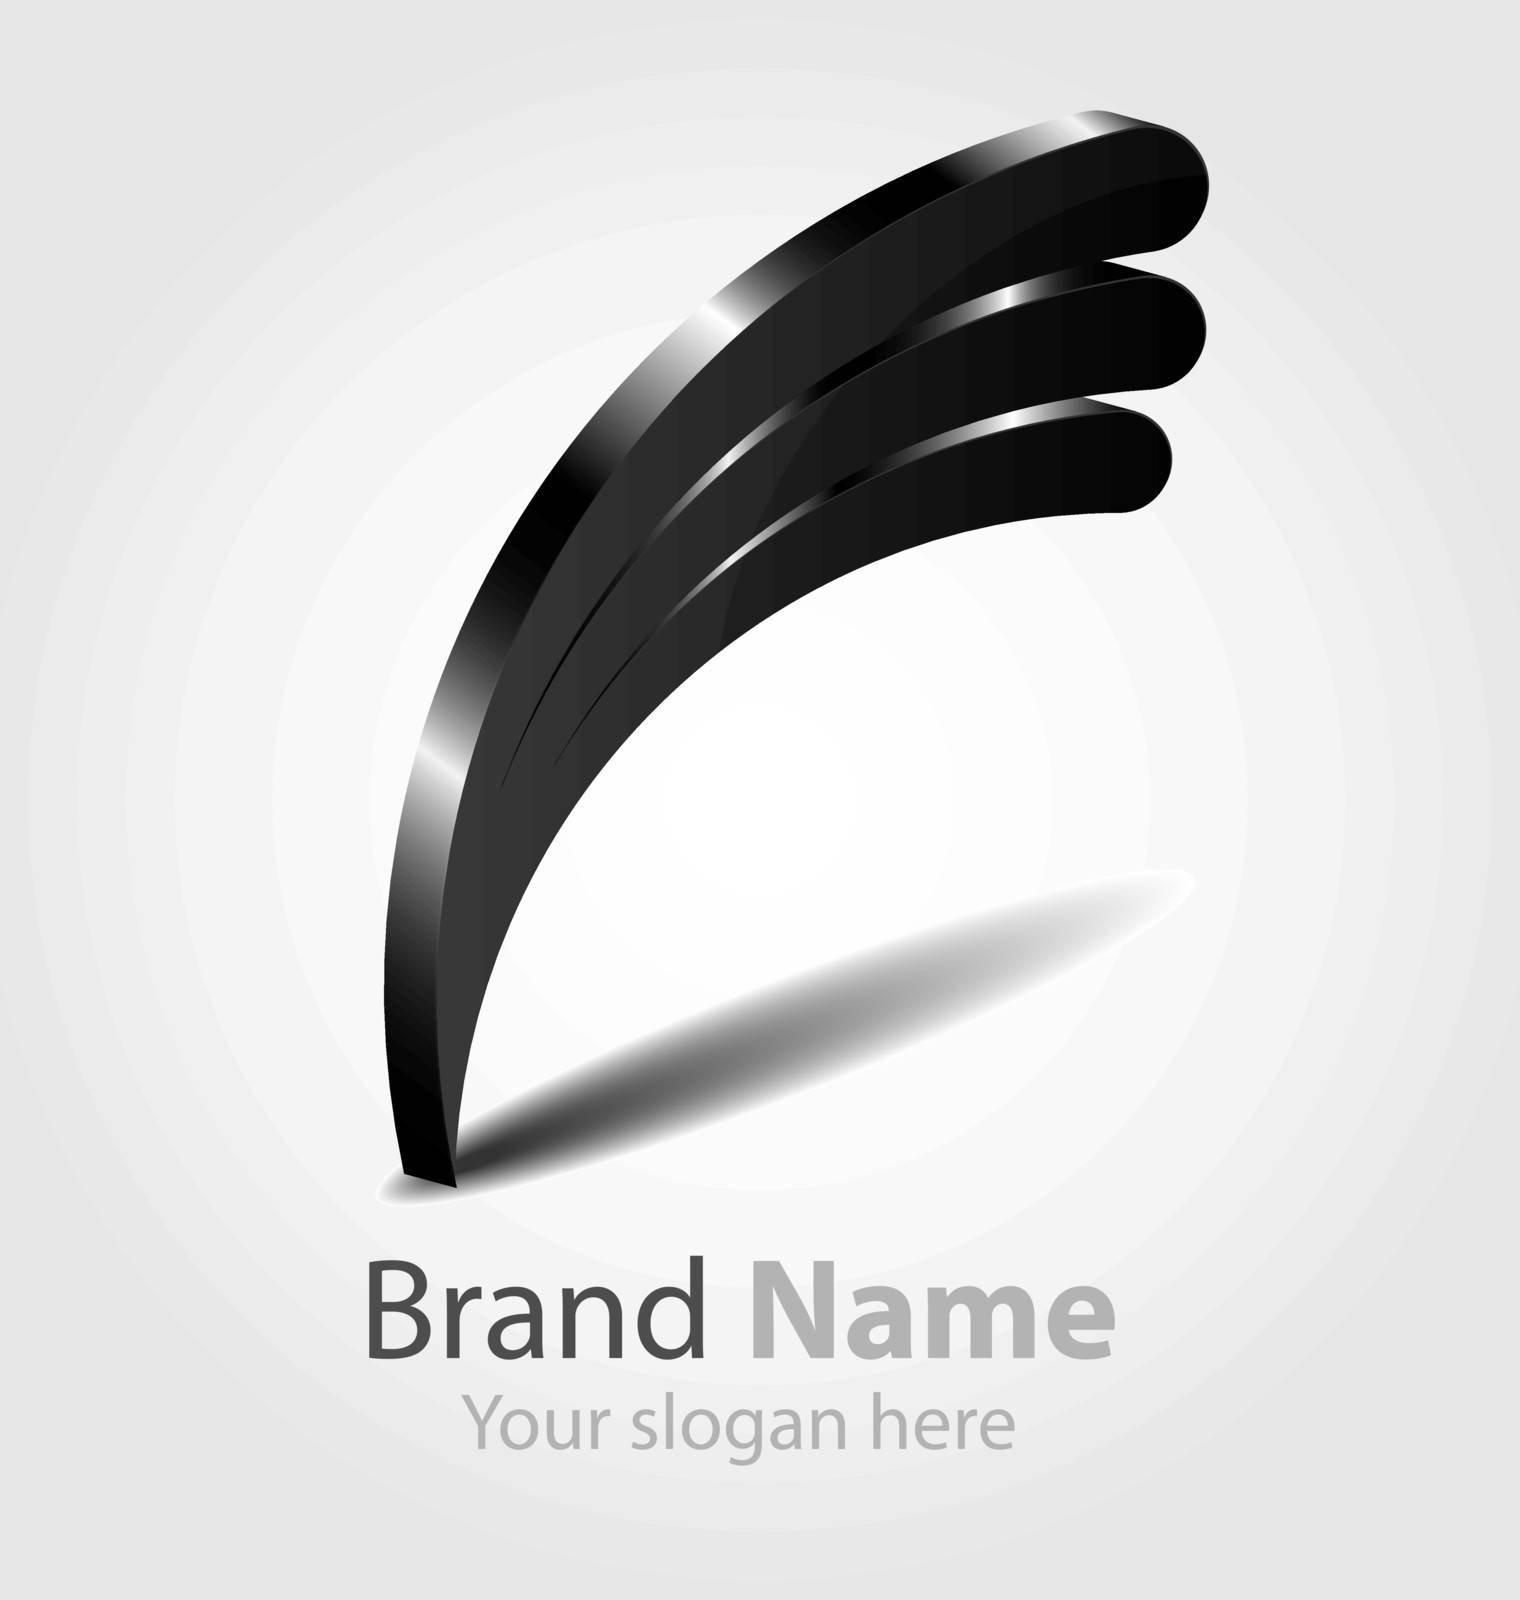 Originally designed vector brand black logo